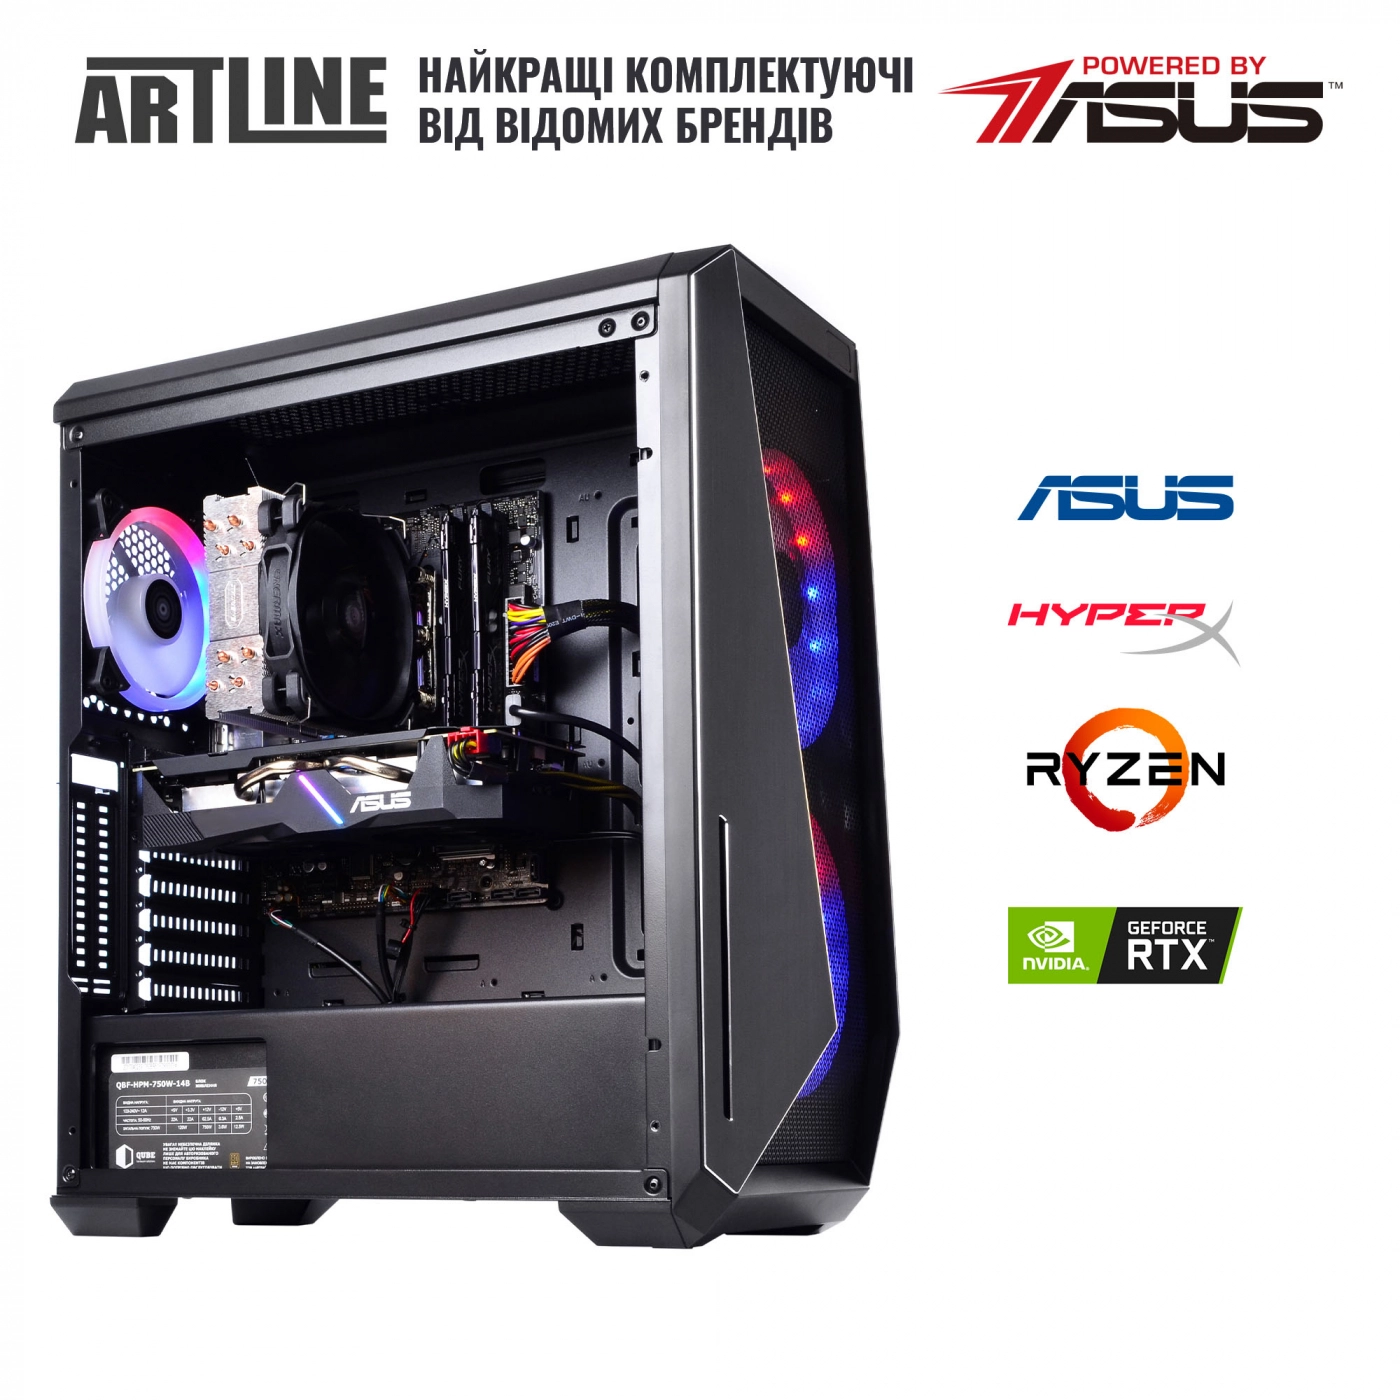 Купить Компьютер ARTLINE Gaming X67v21 - фото 6